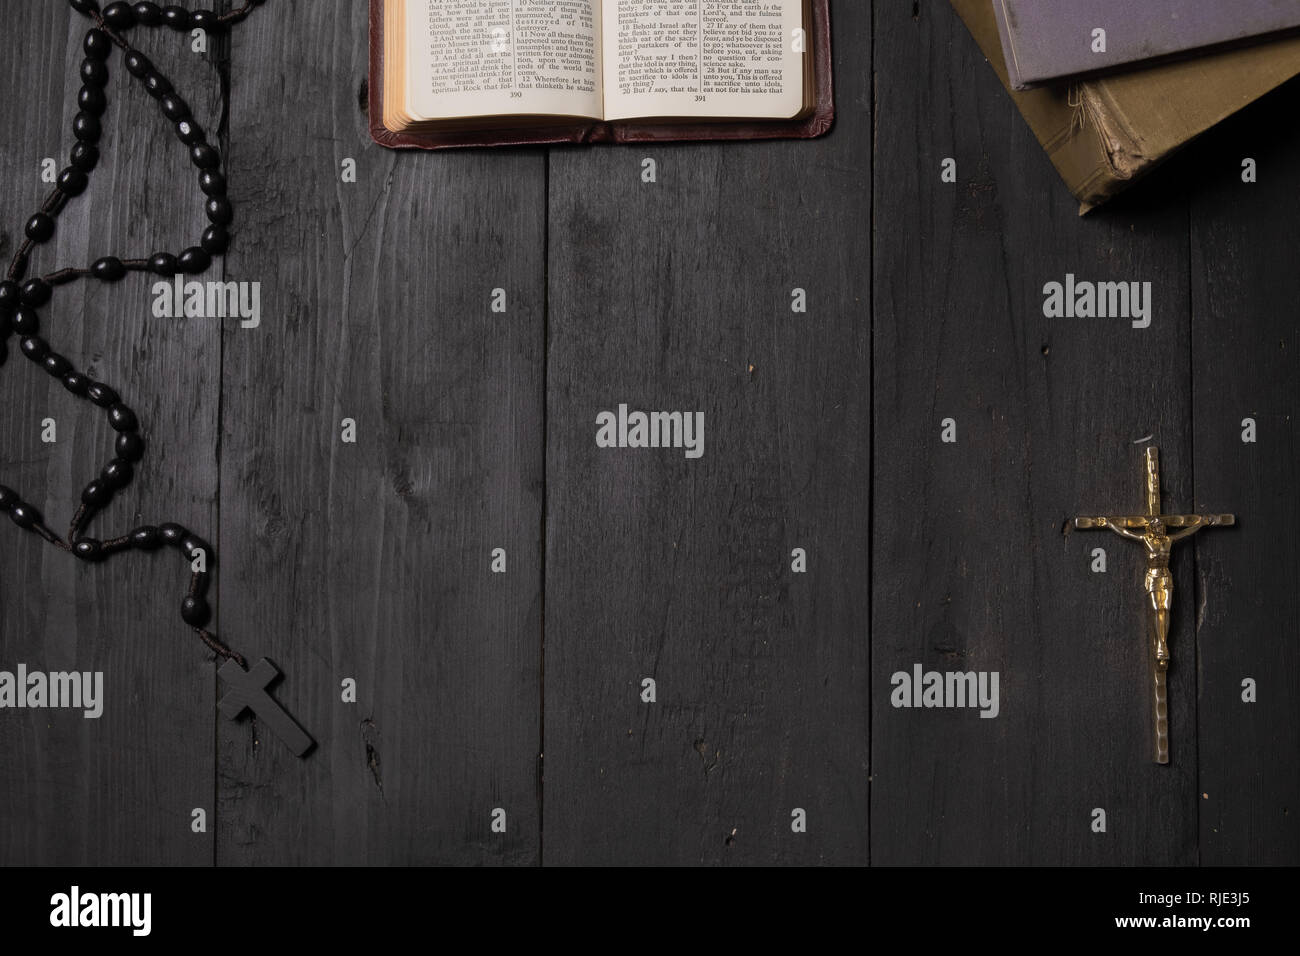 Buch der Bibel und Kruzifix auf dunklen Relation geöffnet, Ansicht von oben. Flach Bild des Neuen Testaments, Kreuz und Rosenkranz auf dem alten schwarzen Hintergrund Stockfoto